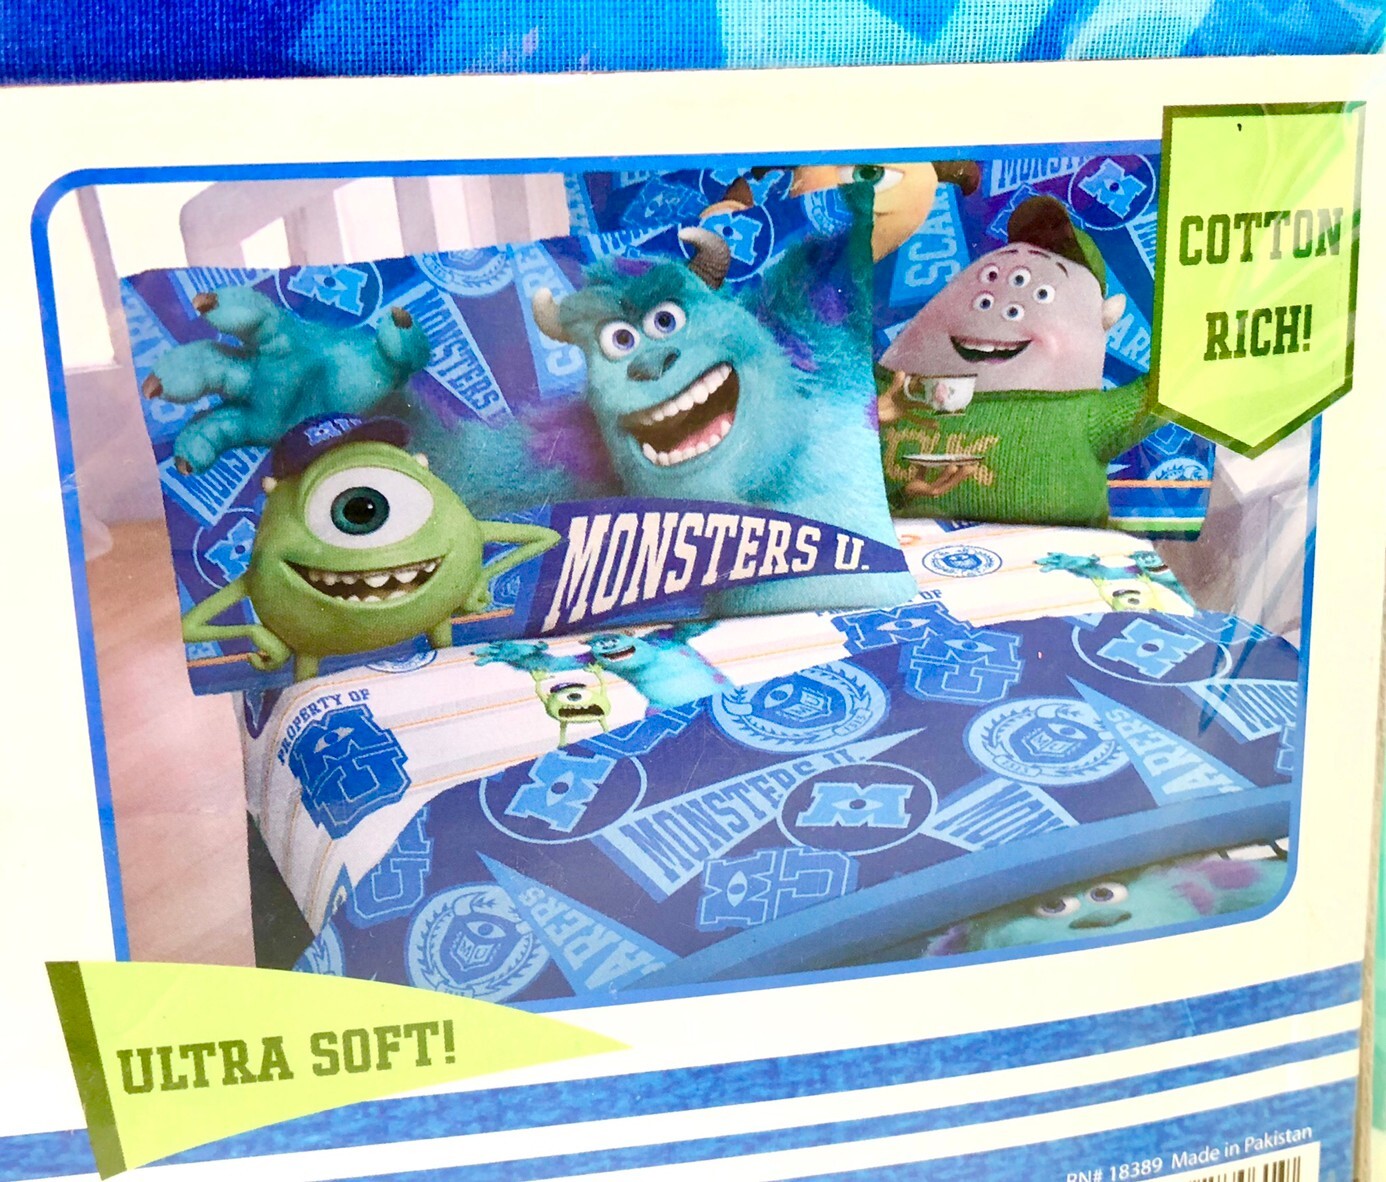 00s モンスターズインク モンスターユニバーシティー ベッドシーツ ピロケース3点セット Disney Pixar Monsters University Twin Sheet Set The Puppez E Shop ザ パペッツ松本 Webショップ